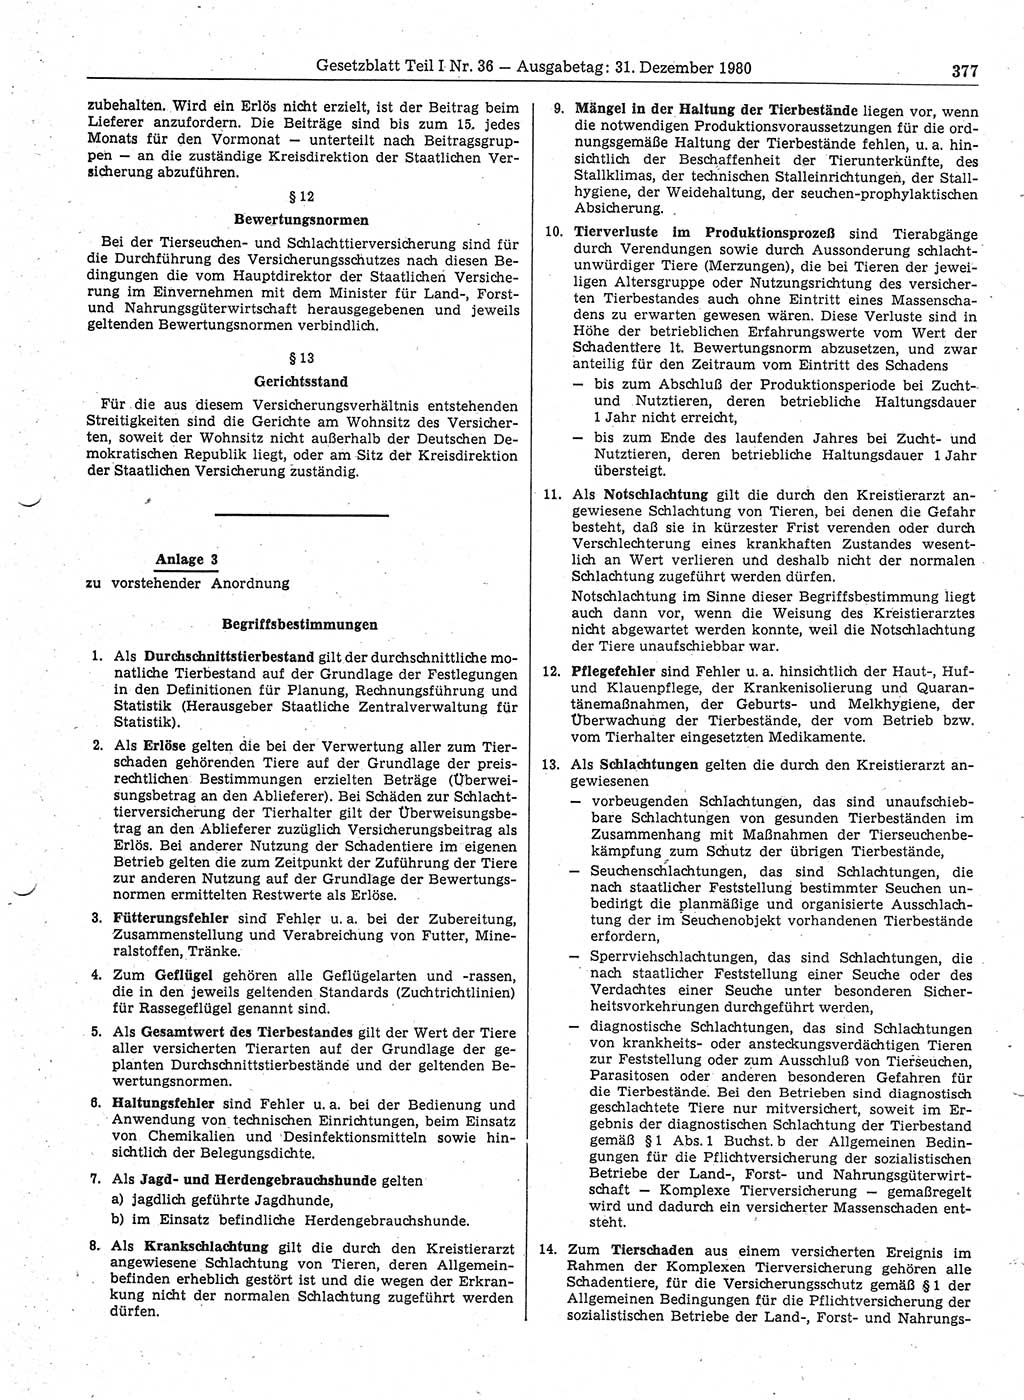 Gesetzblatt (GBl.) der Deutschen Demokratischen Republik (DDR) Teil Ⅰ 1980, Seite 377 (GBl. DDR Ⅰ 1980, S. 377)